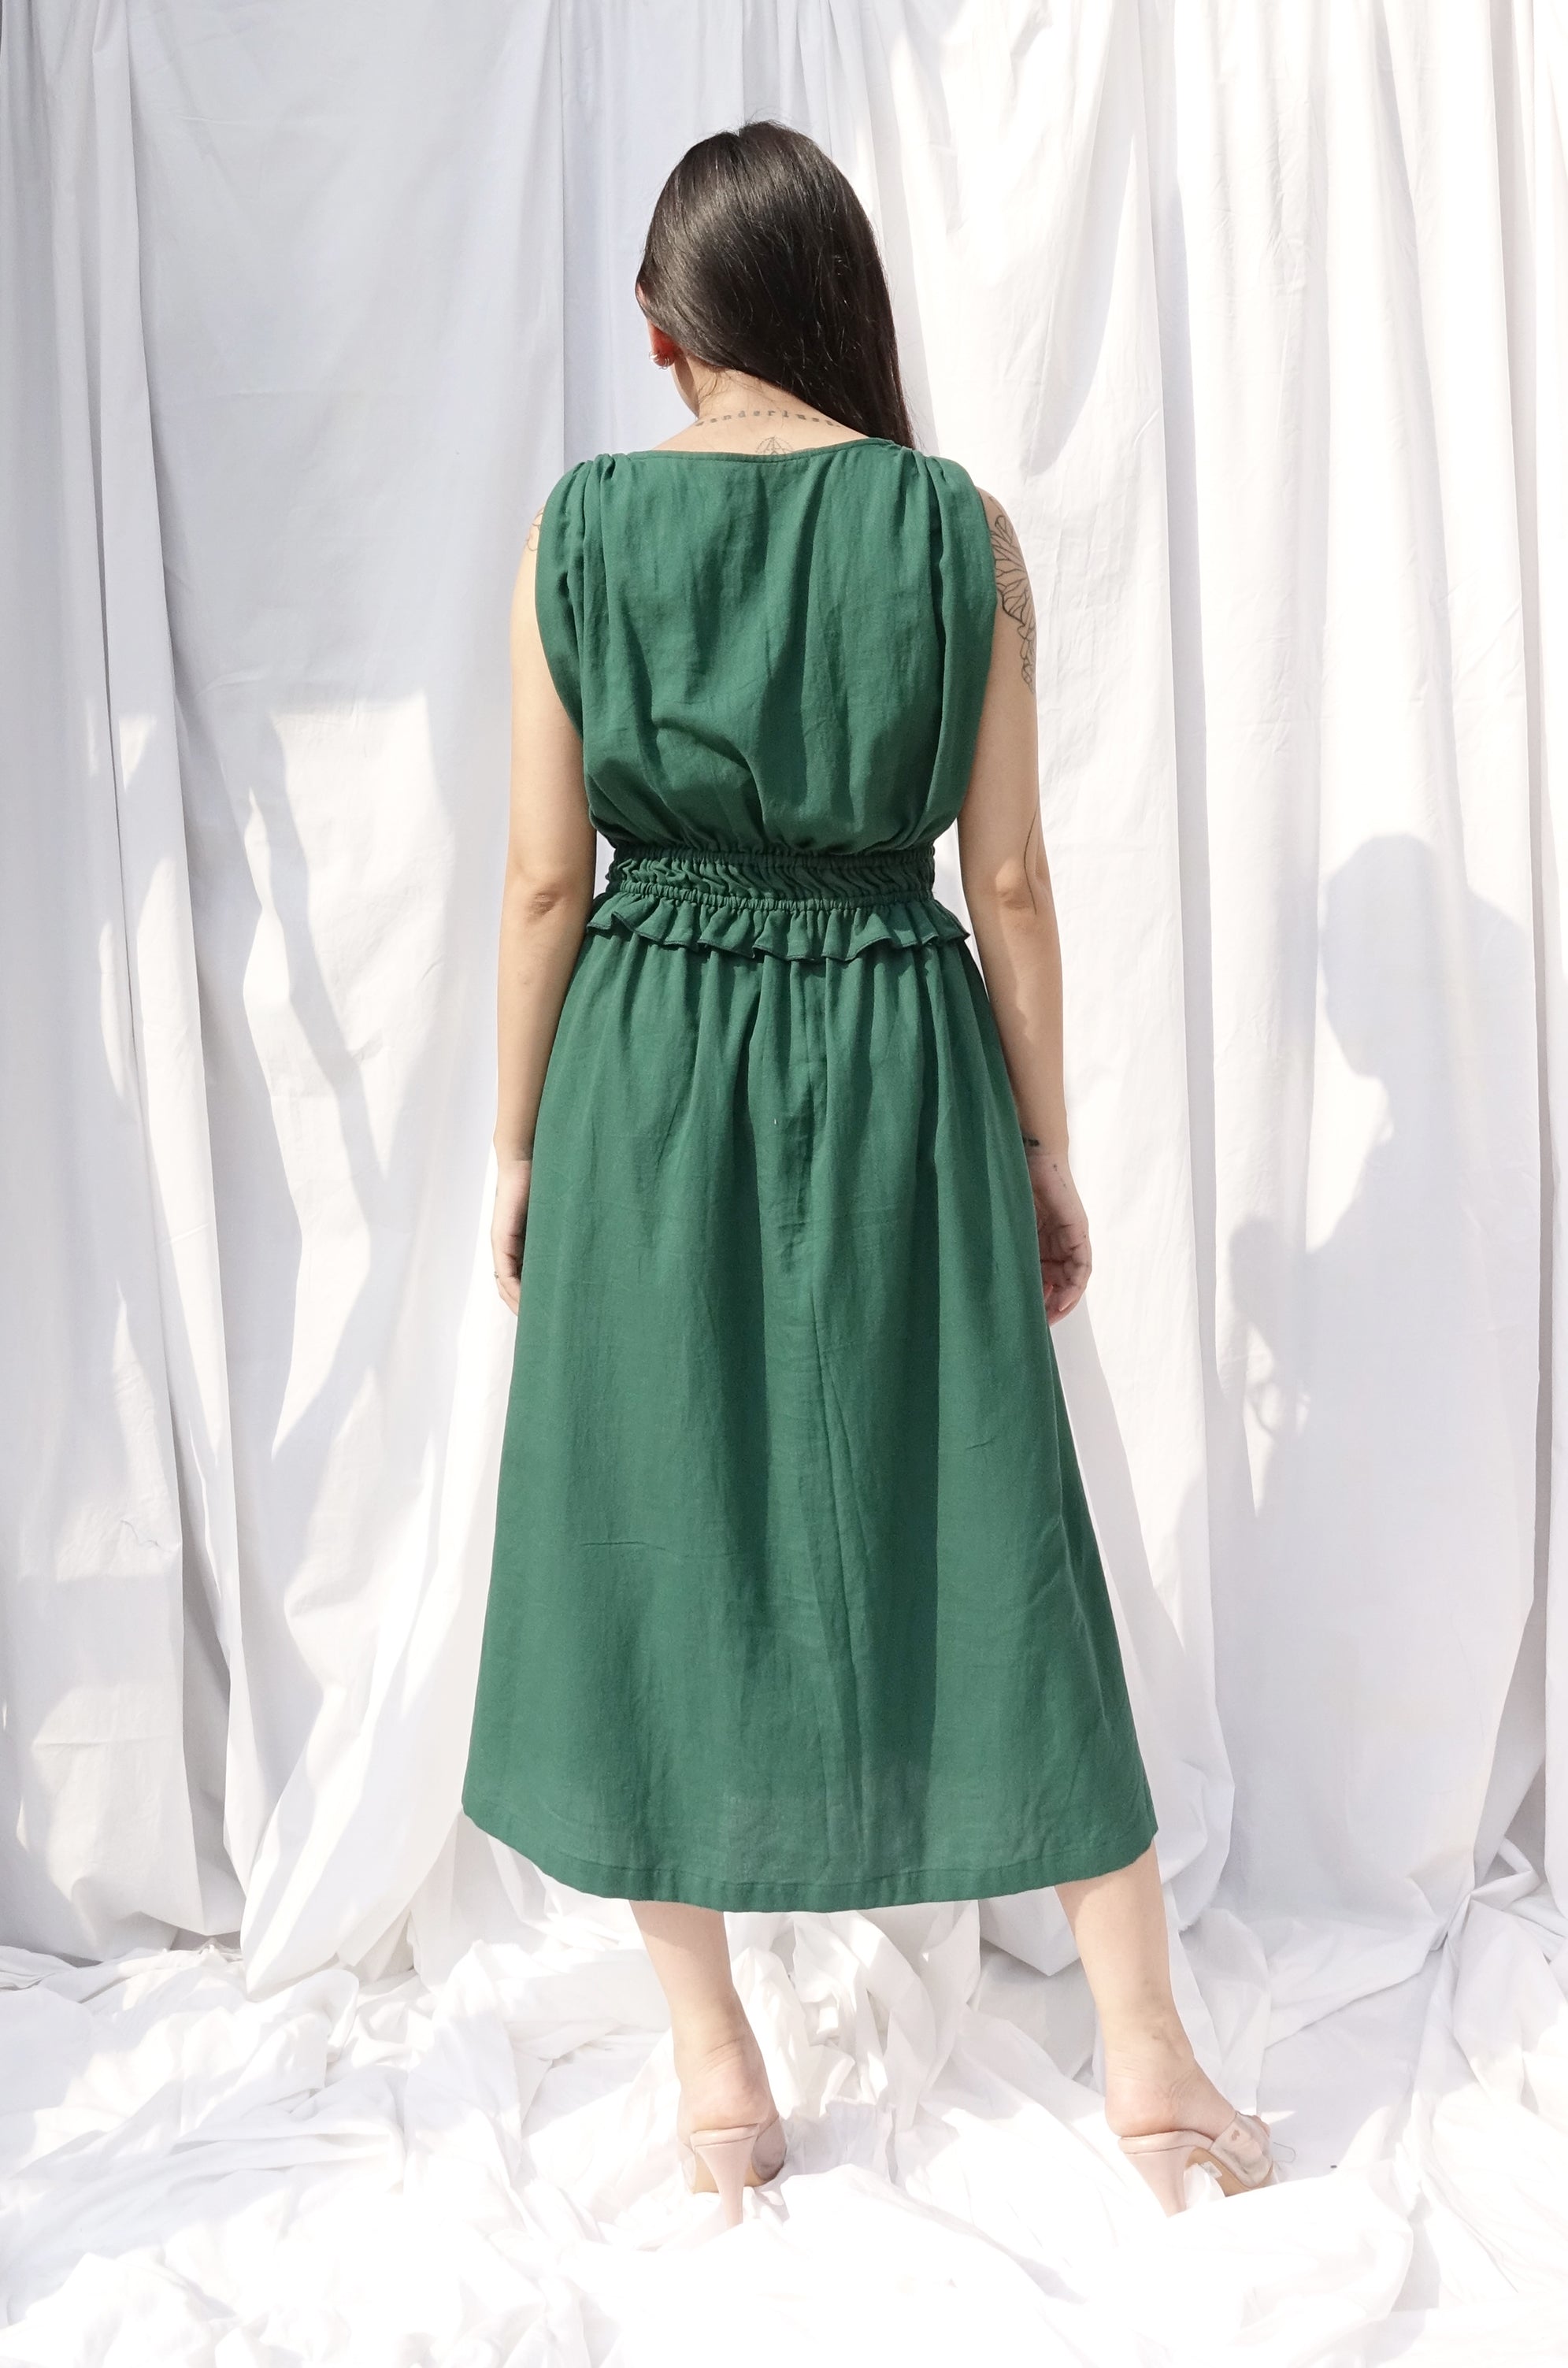 Malory dress (free size, midi length)